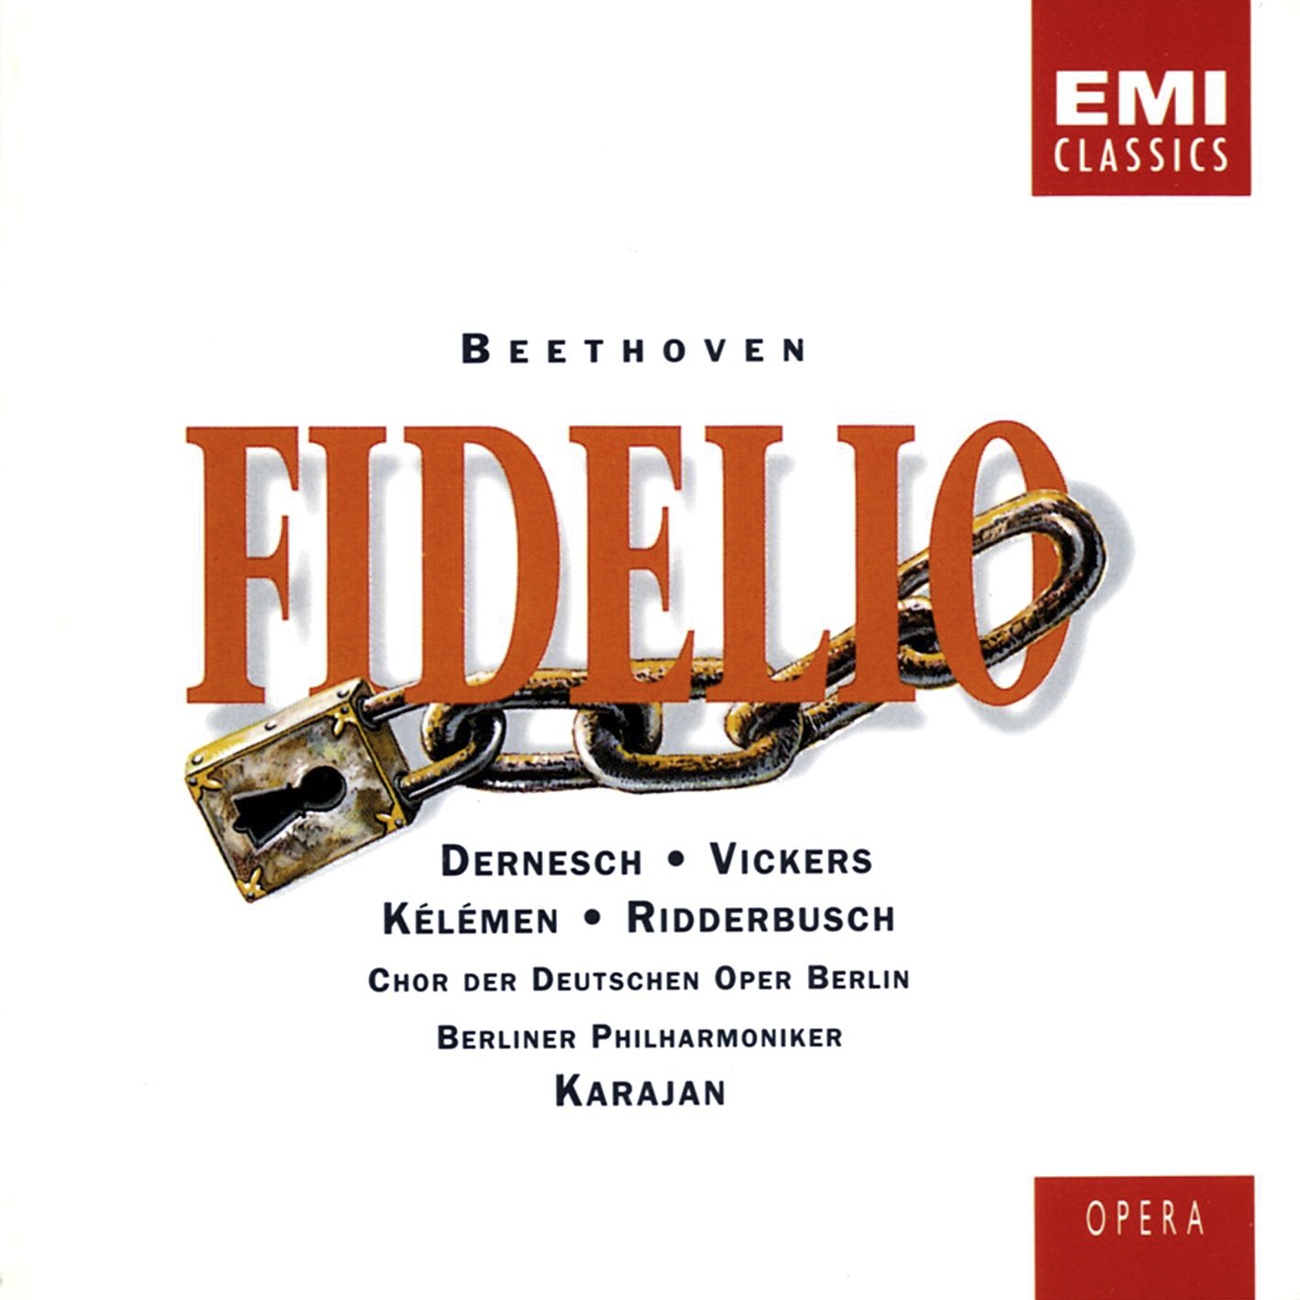 Fidelio Op. 72, ACT 1: 'Ist Fidelio noch nicht zuruck!' (Rocco/Marzelline/Leonore)